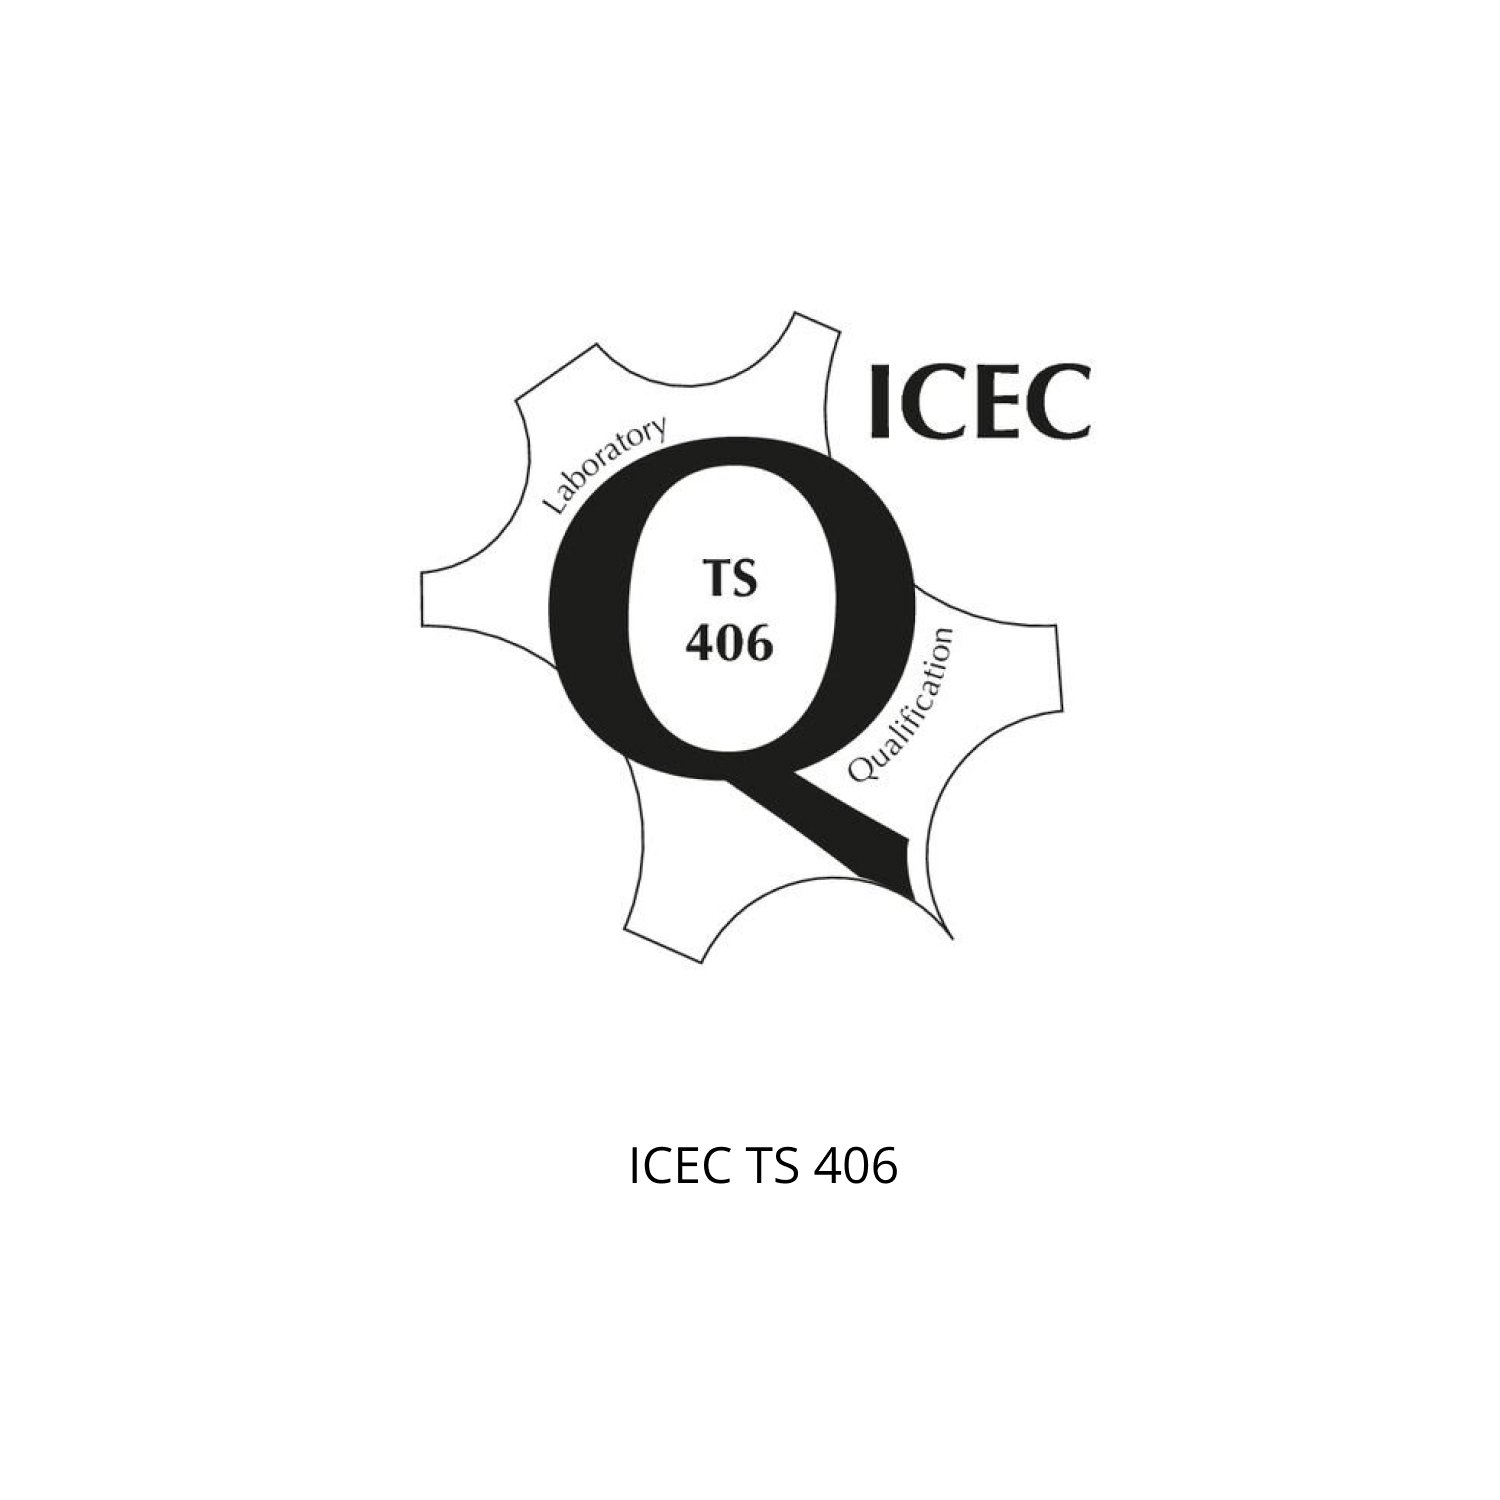 ICEC TS 406.jpg (Copia) (Copia) (Copia)